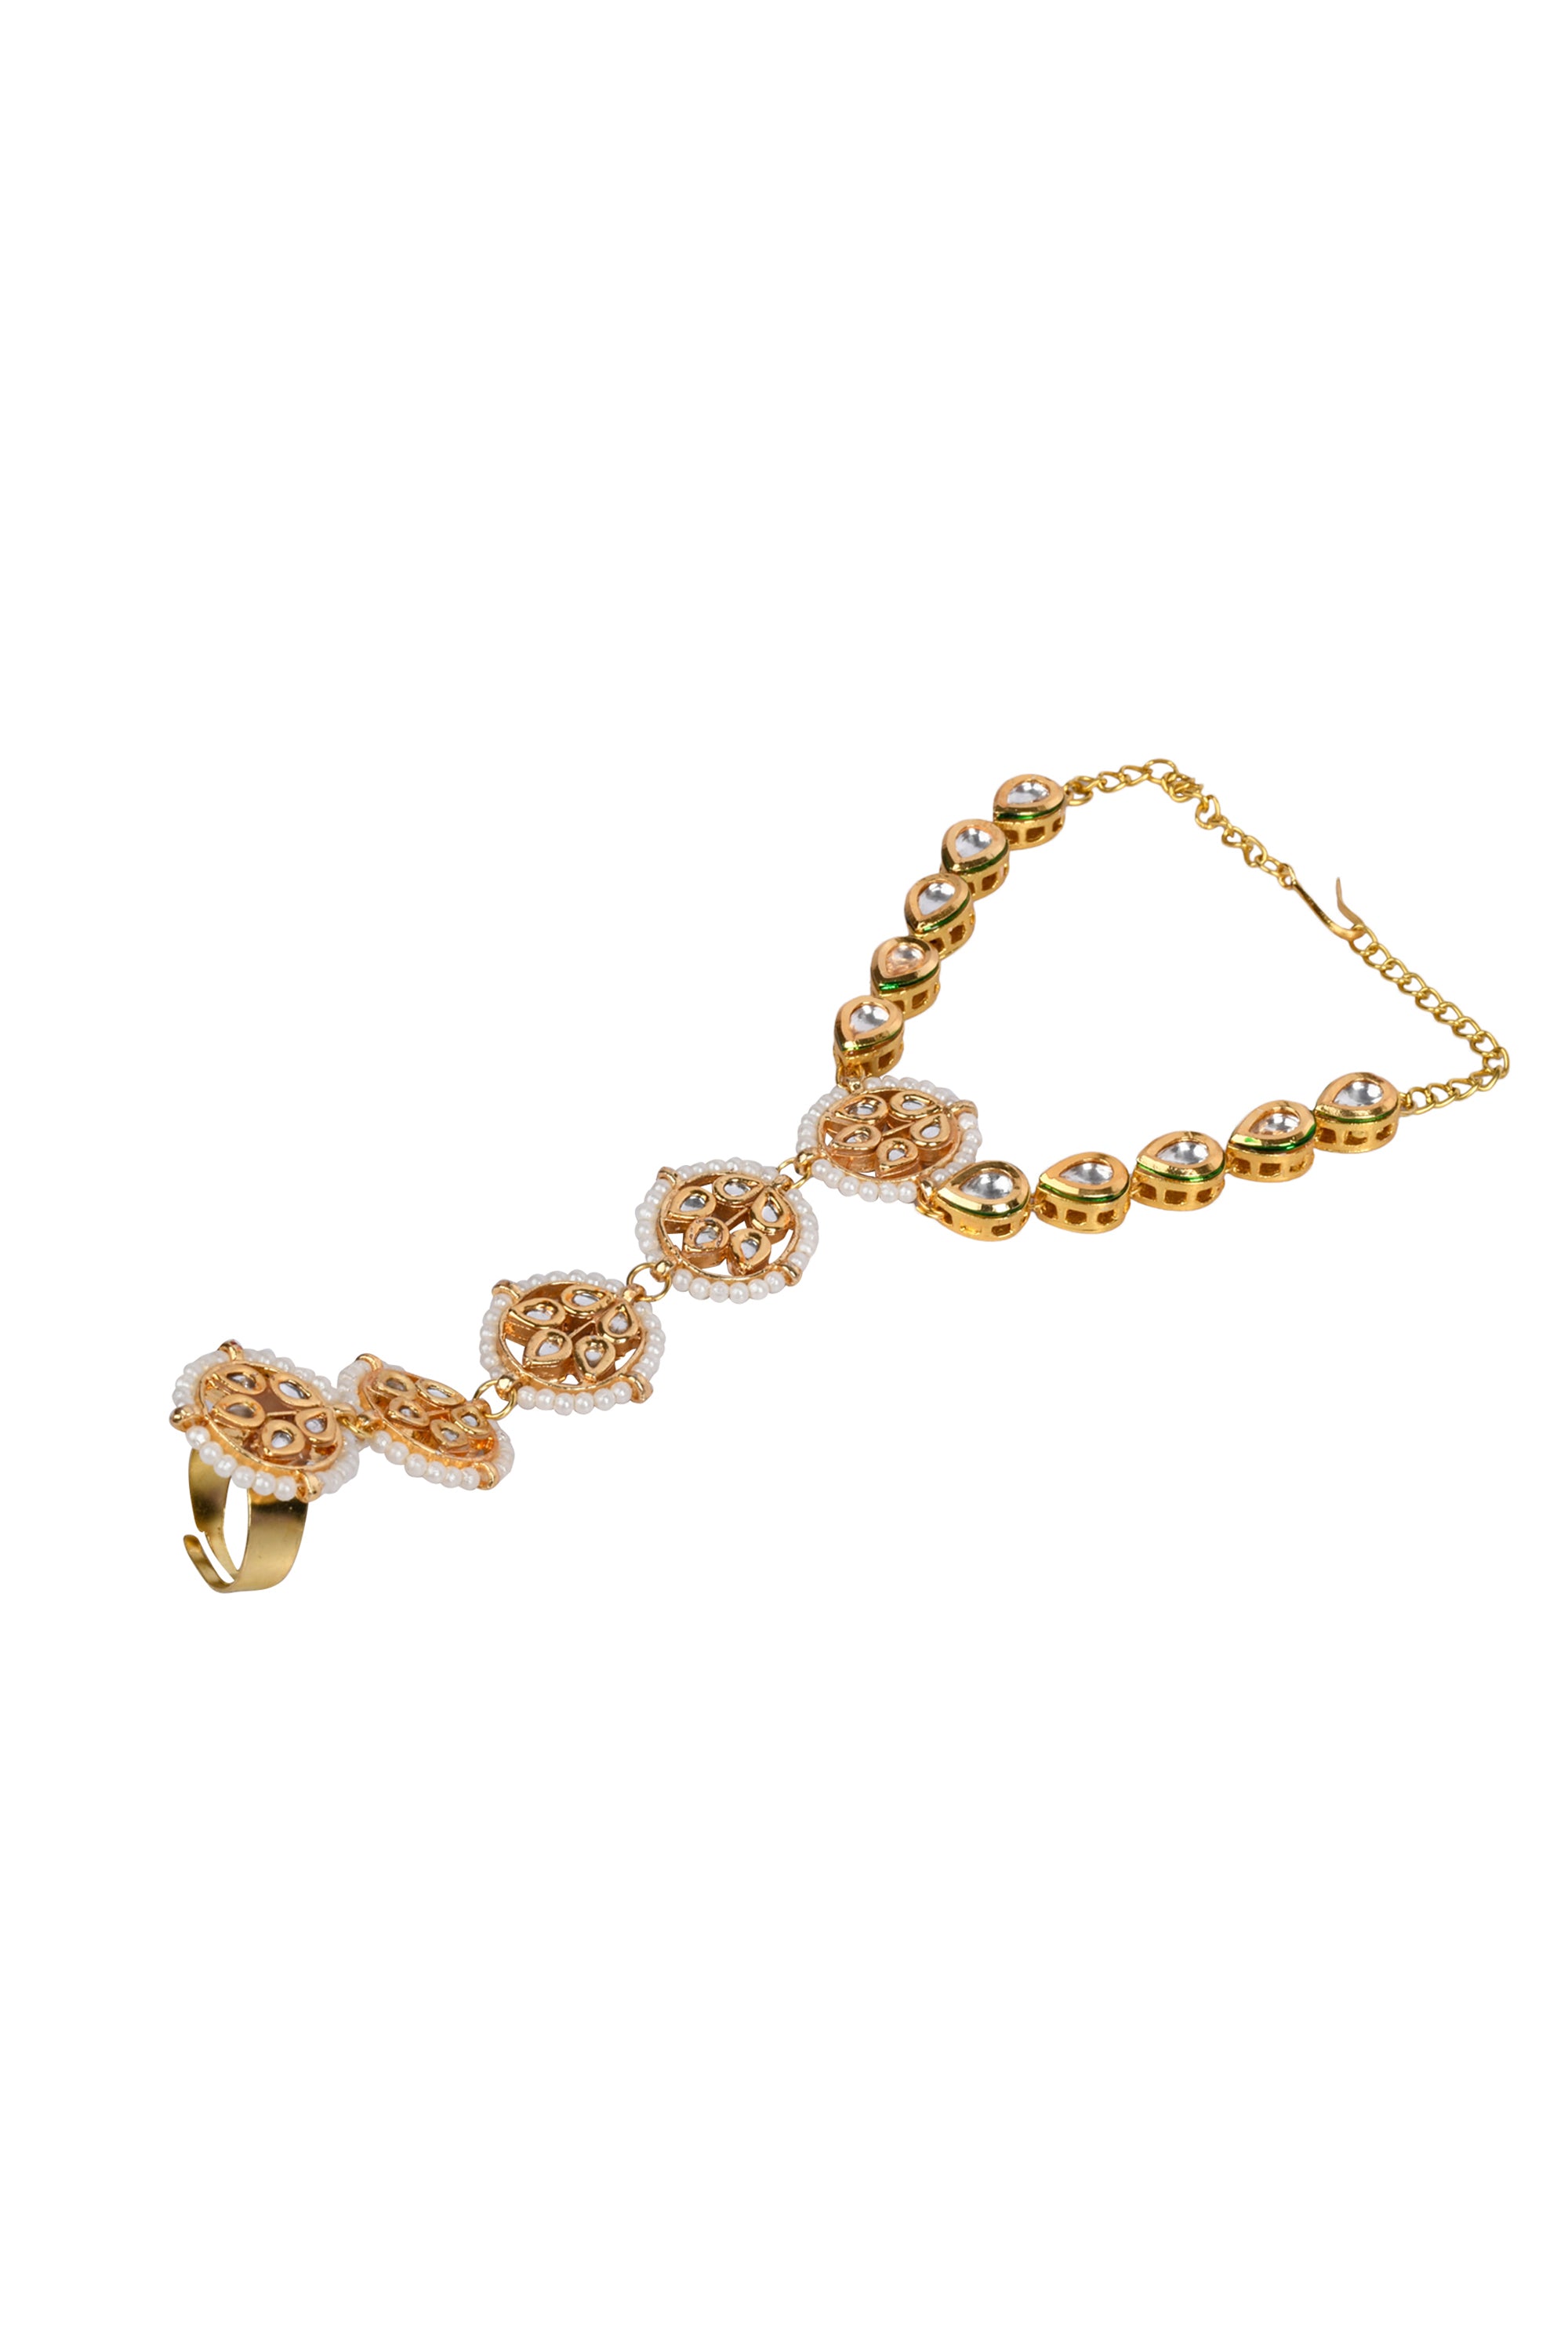 Gold Tone Kundan Haathphool with Pearls